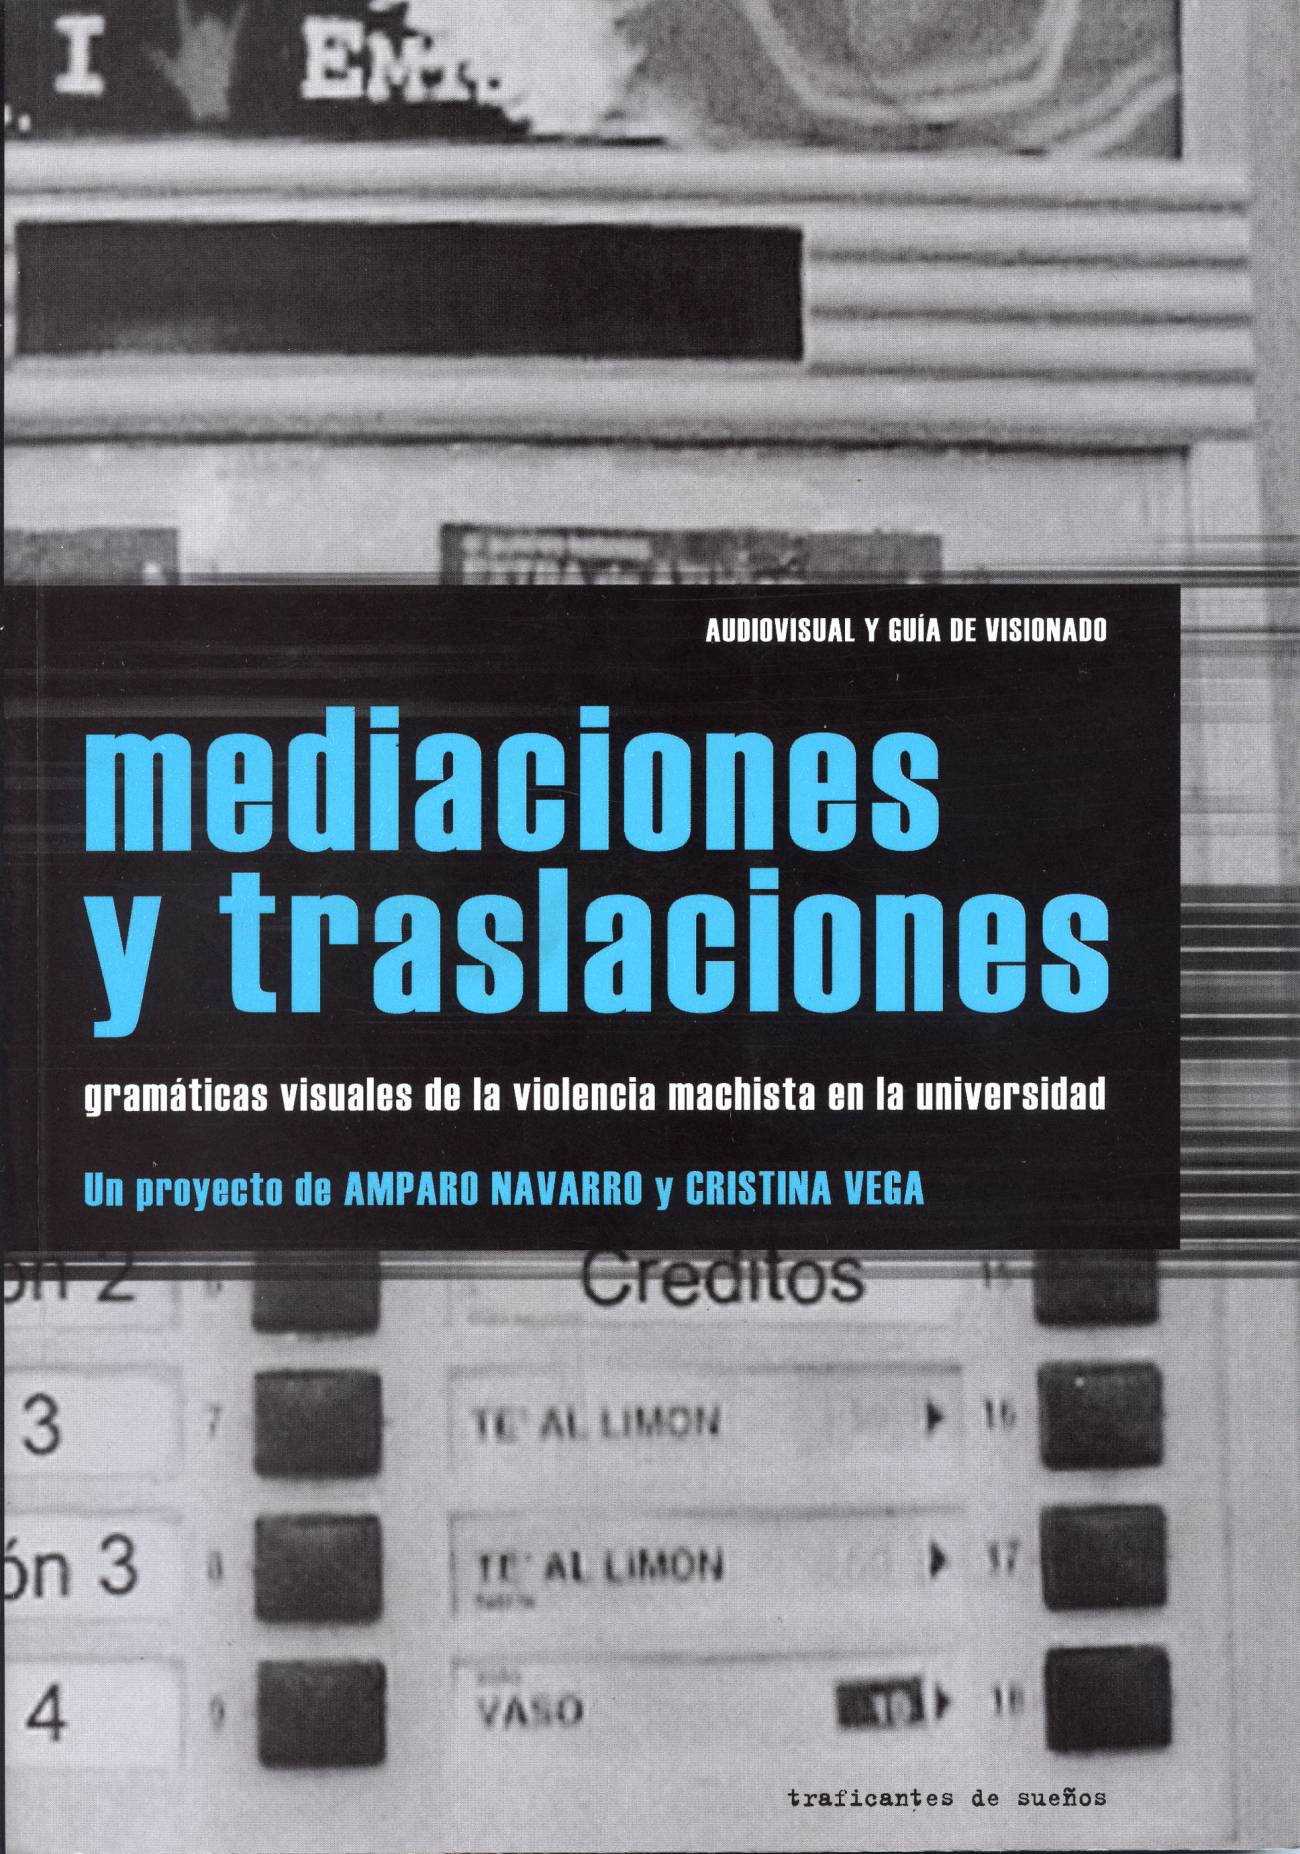 la portada del libro, editado por Traficantes de sueños